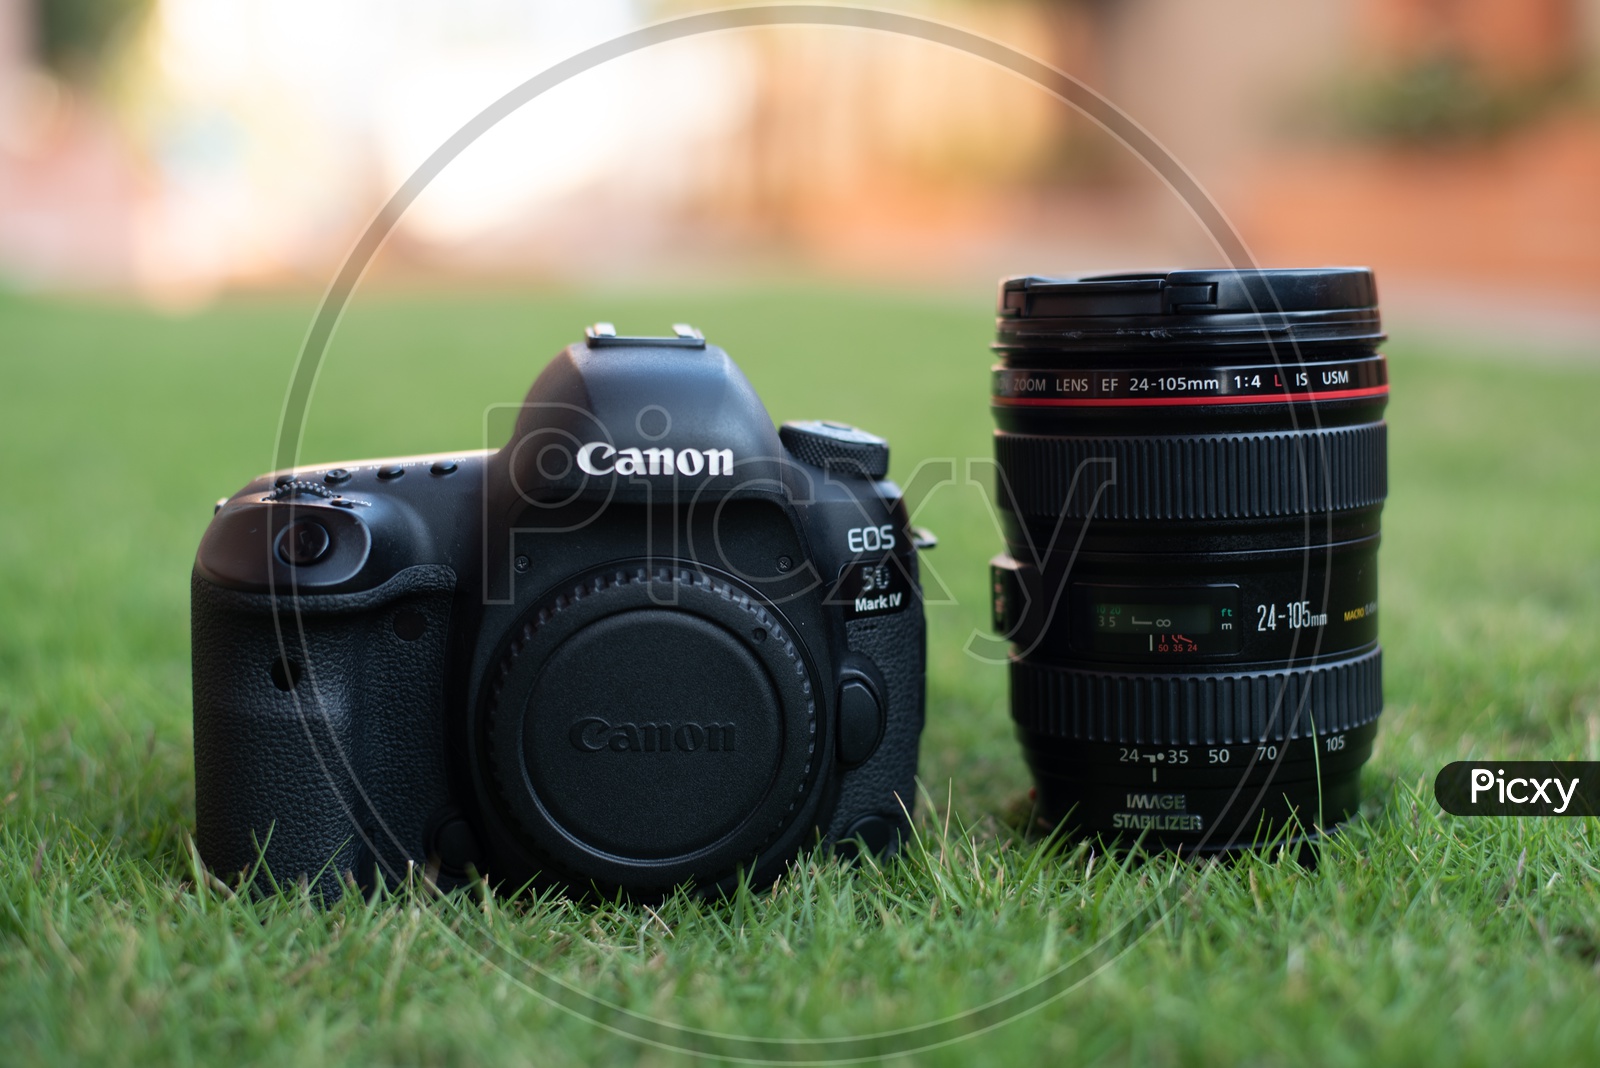 Canon Eos 5D Mark IV   DSLR Camera With Canon  24-104 mm Lens On Lawn Garden Grass Backdrop